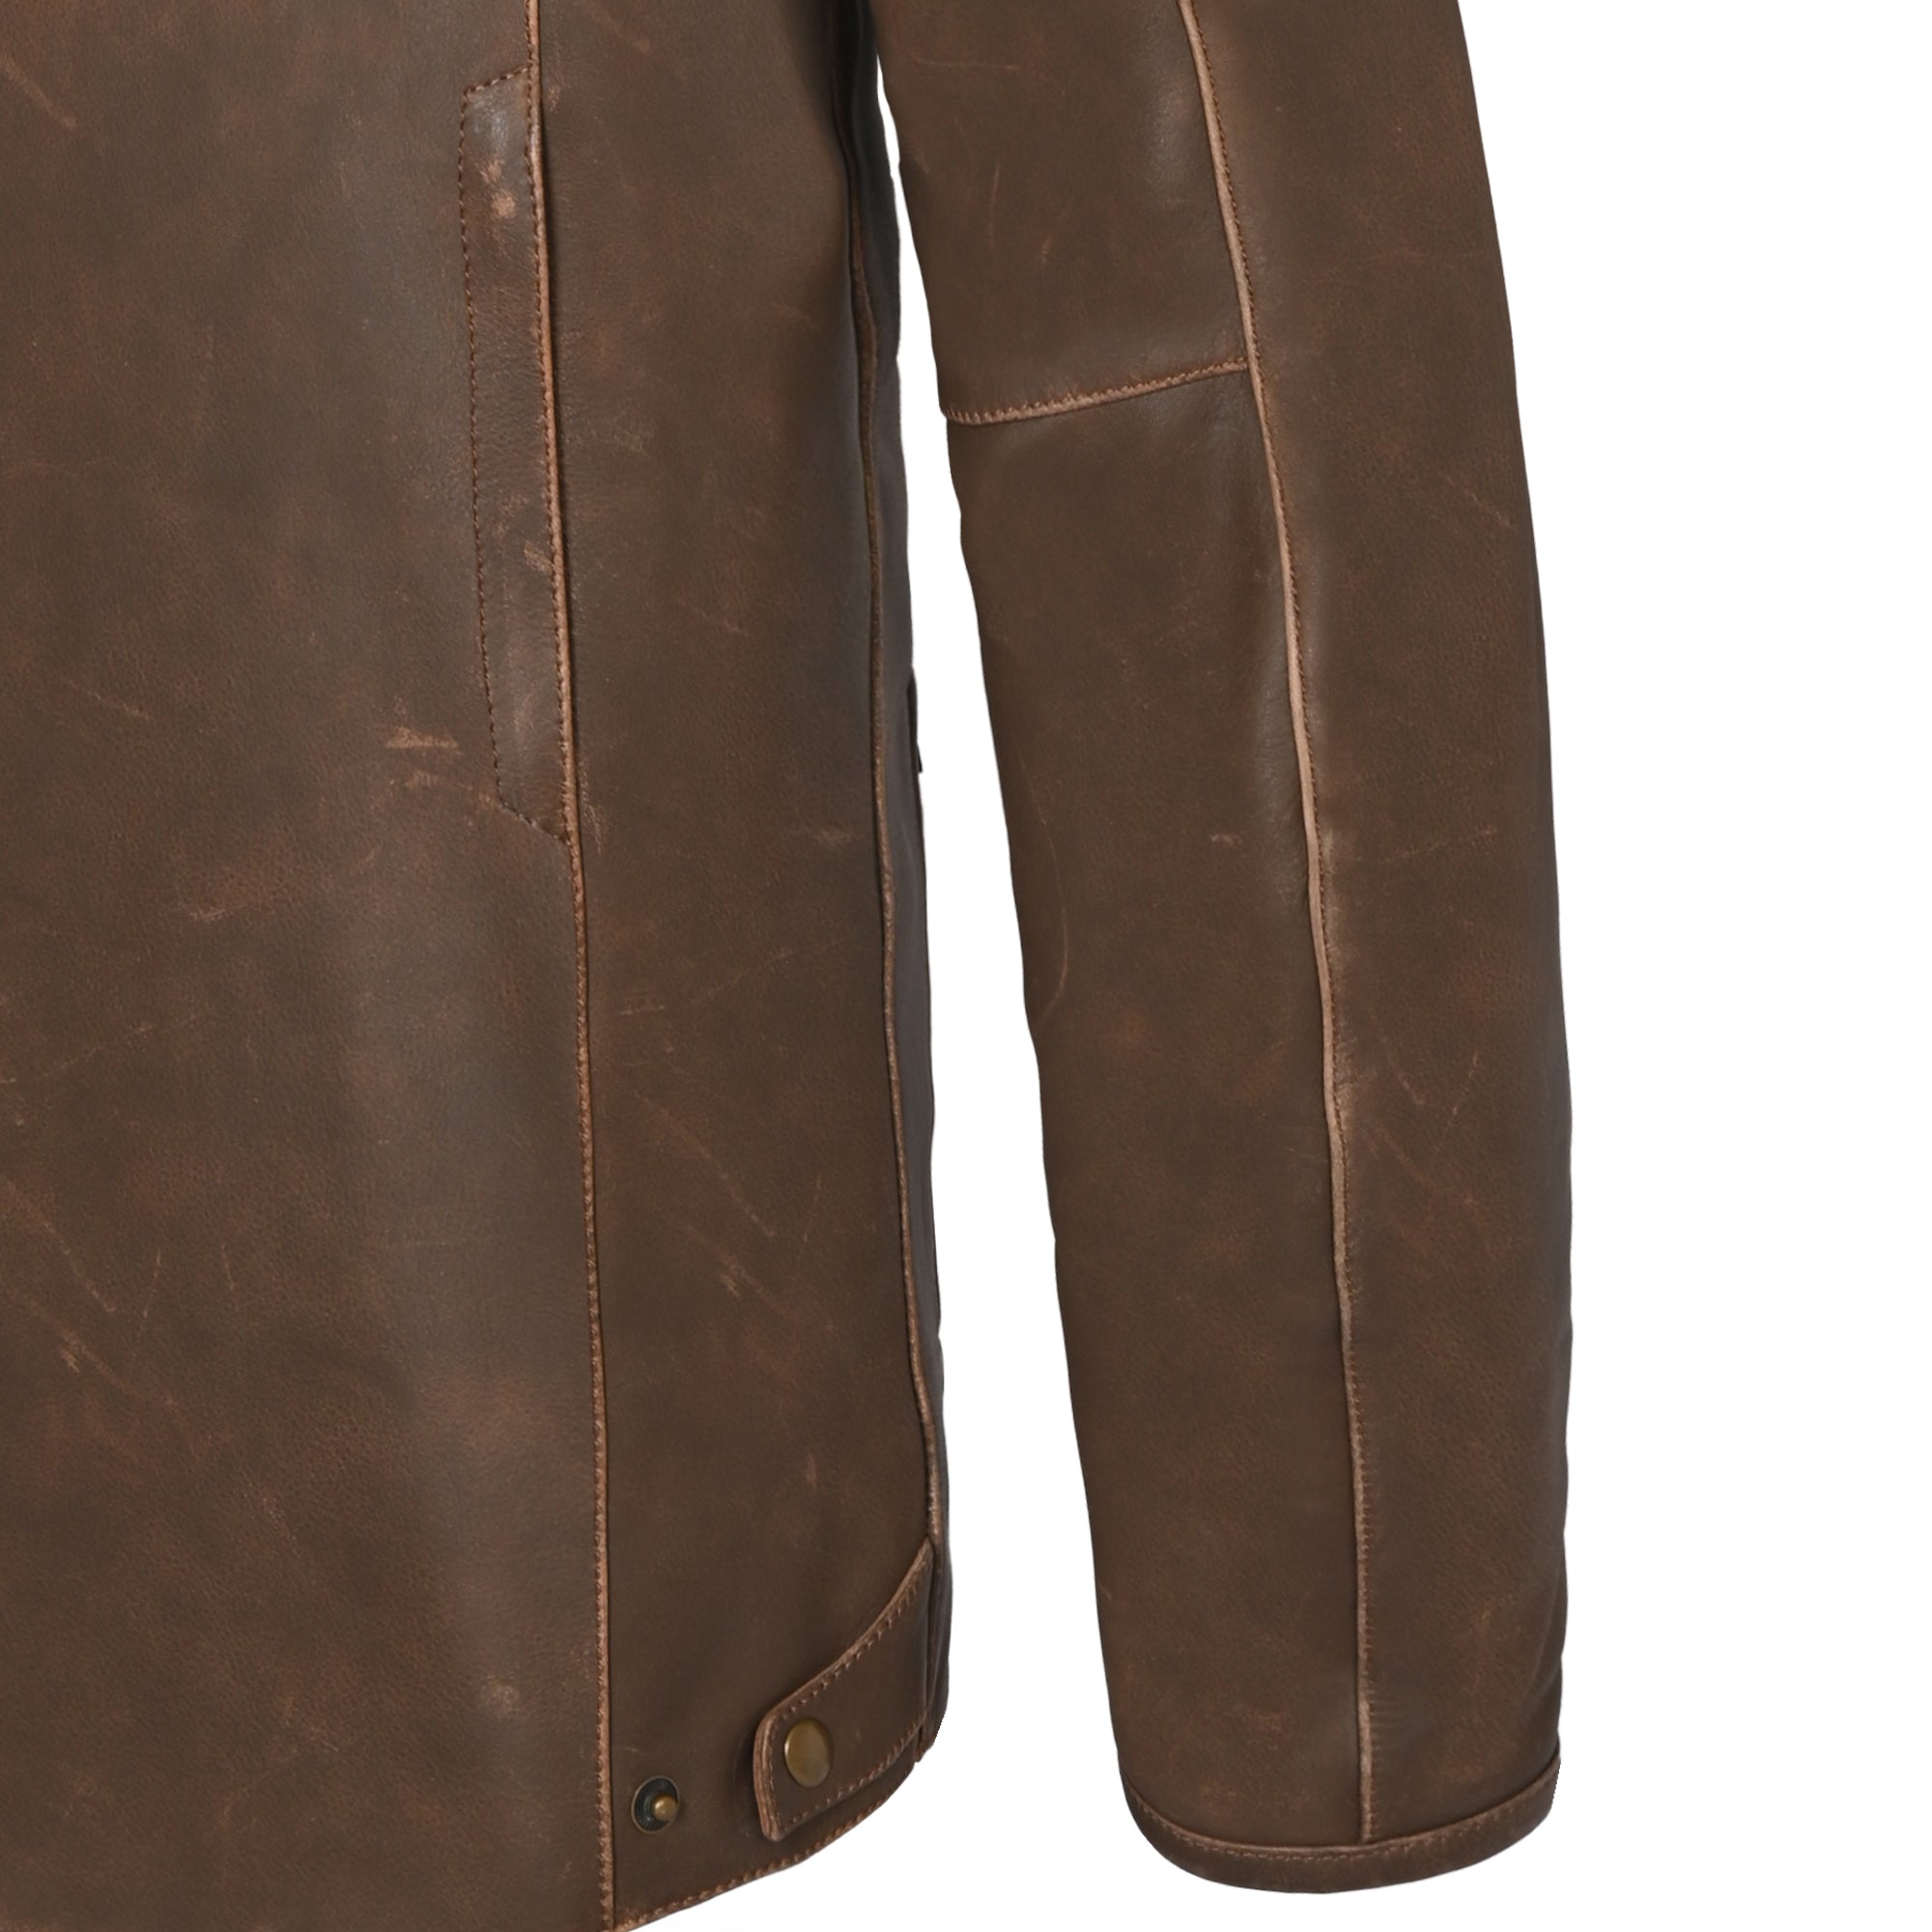 Bela Stark - Leather Jacket - Vintage Brown Beige MaximomotoUK